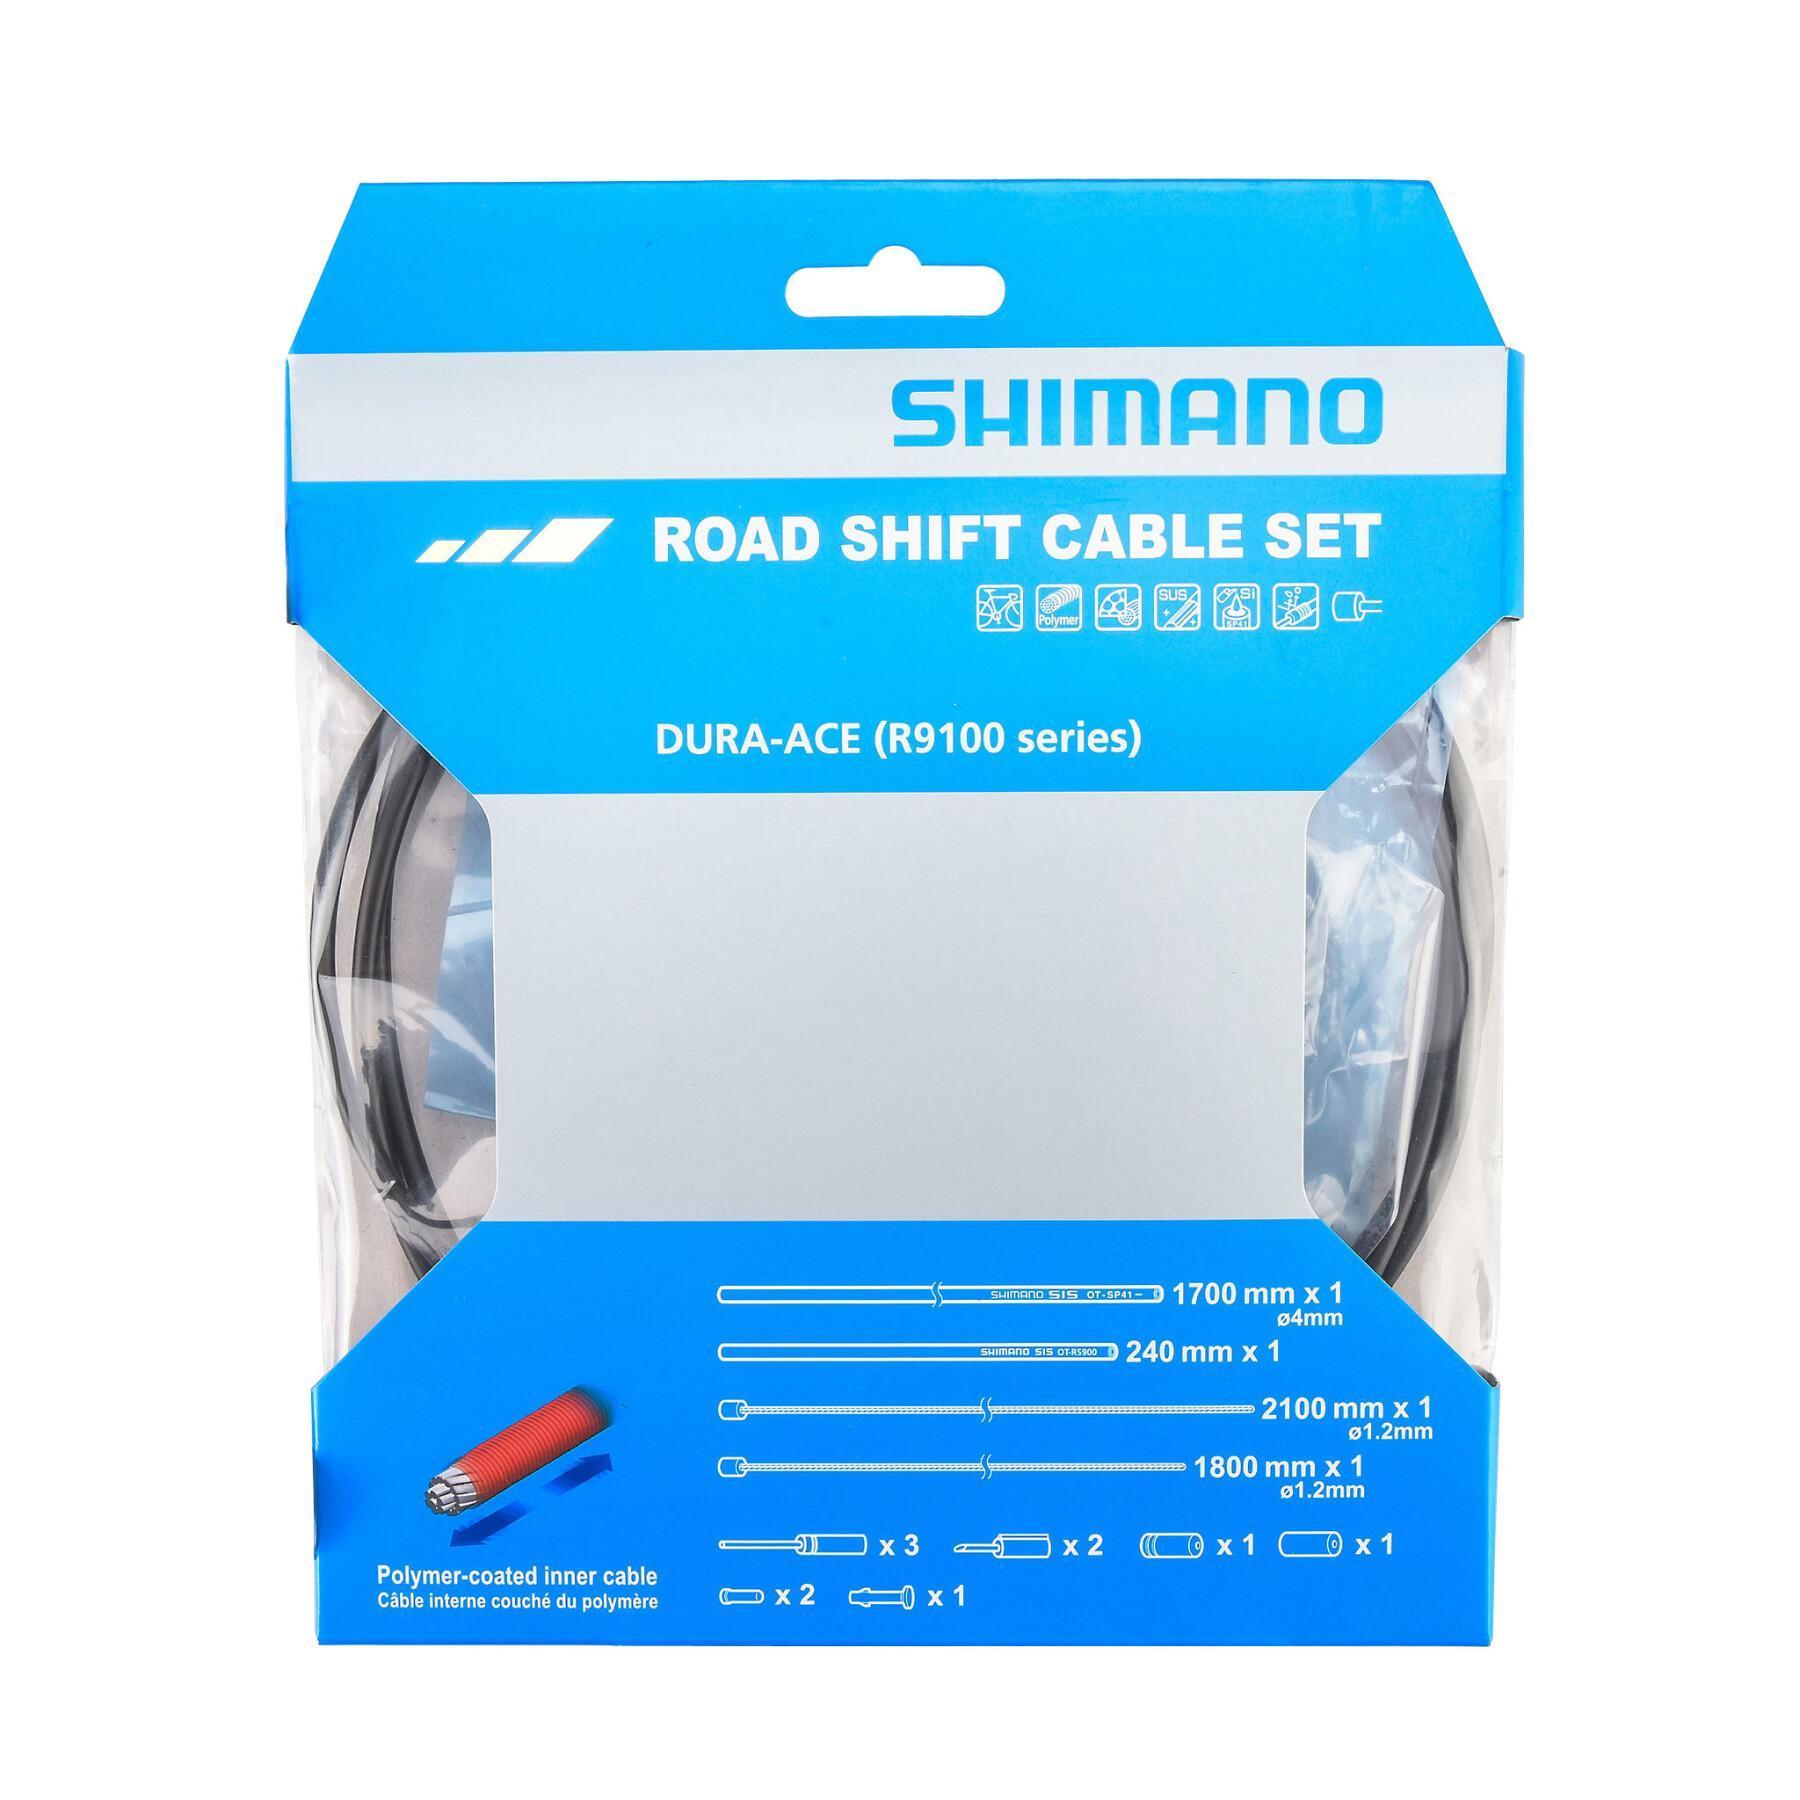 Polymerbeschichtete Kabelsätze und Schalthüllen Shimano